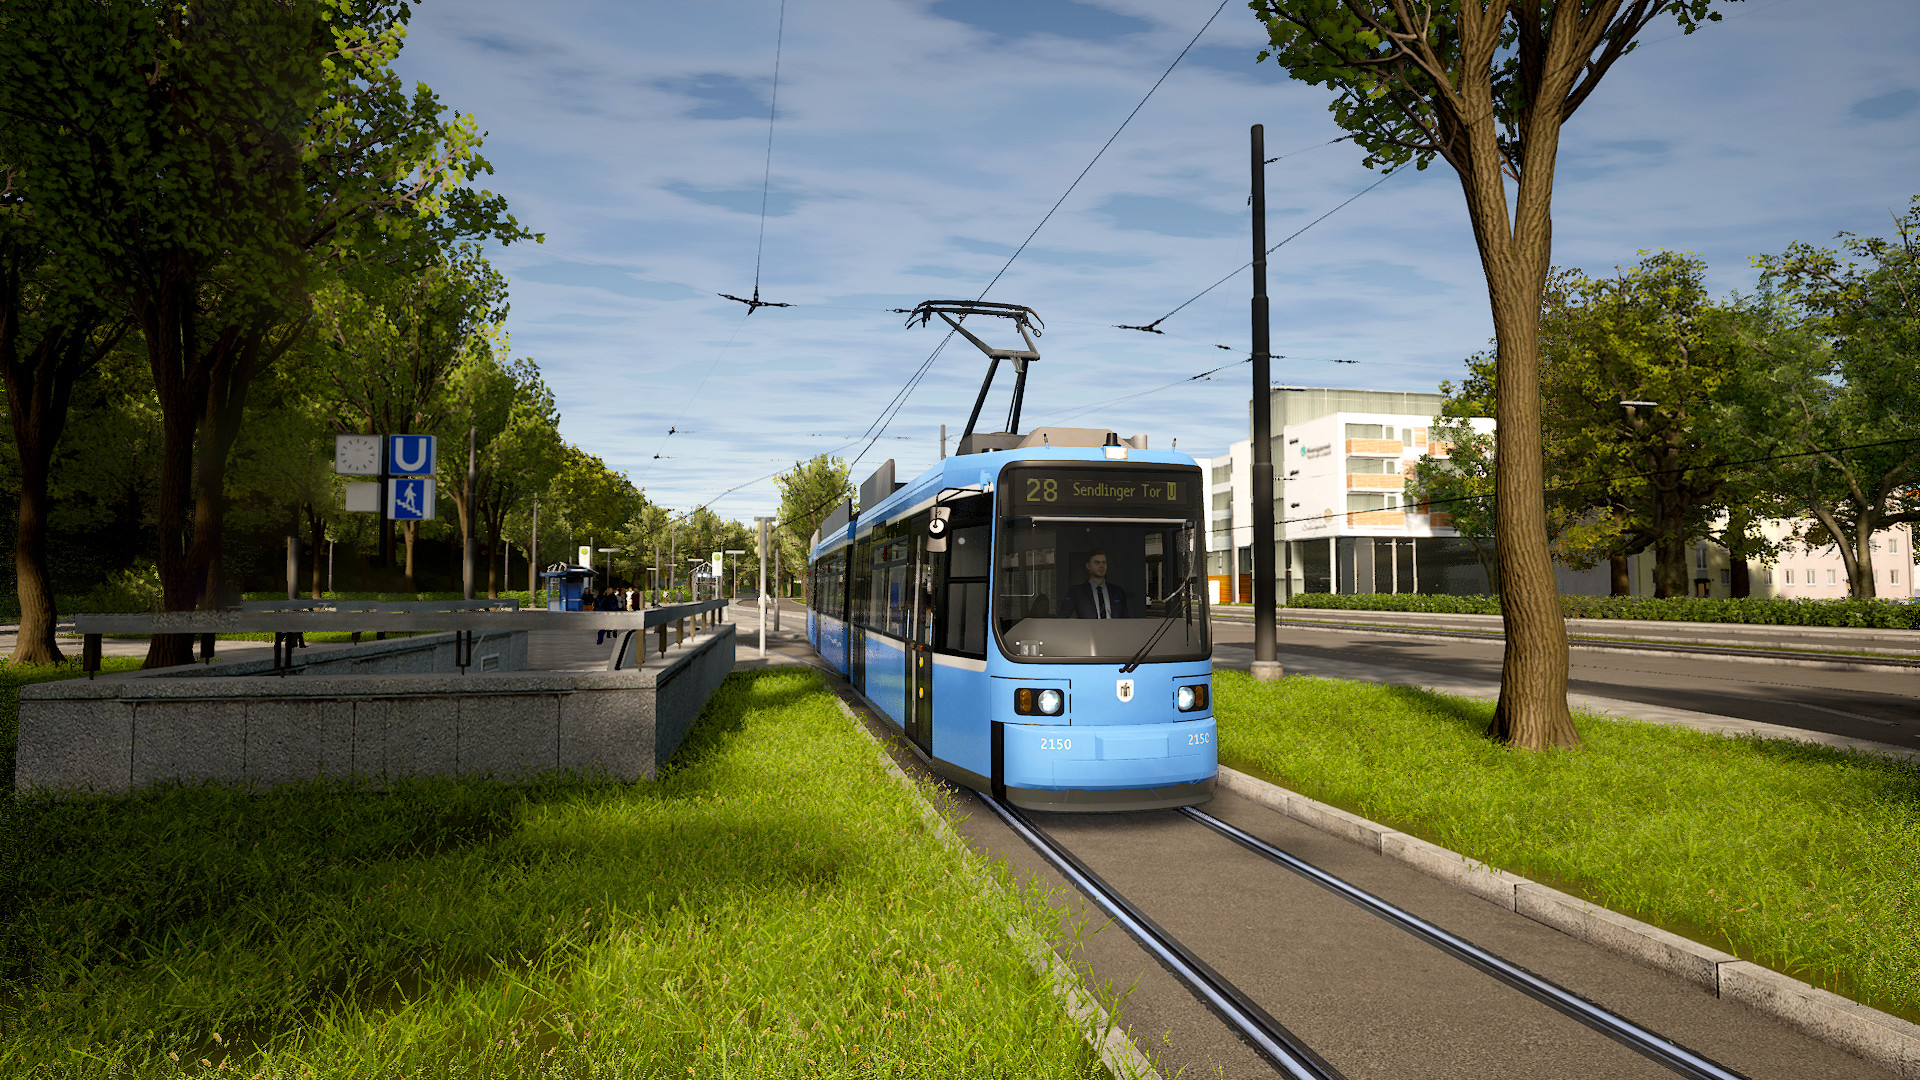 Find the best laptops for TramSim Munich - The Tram Simulator